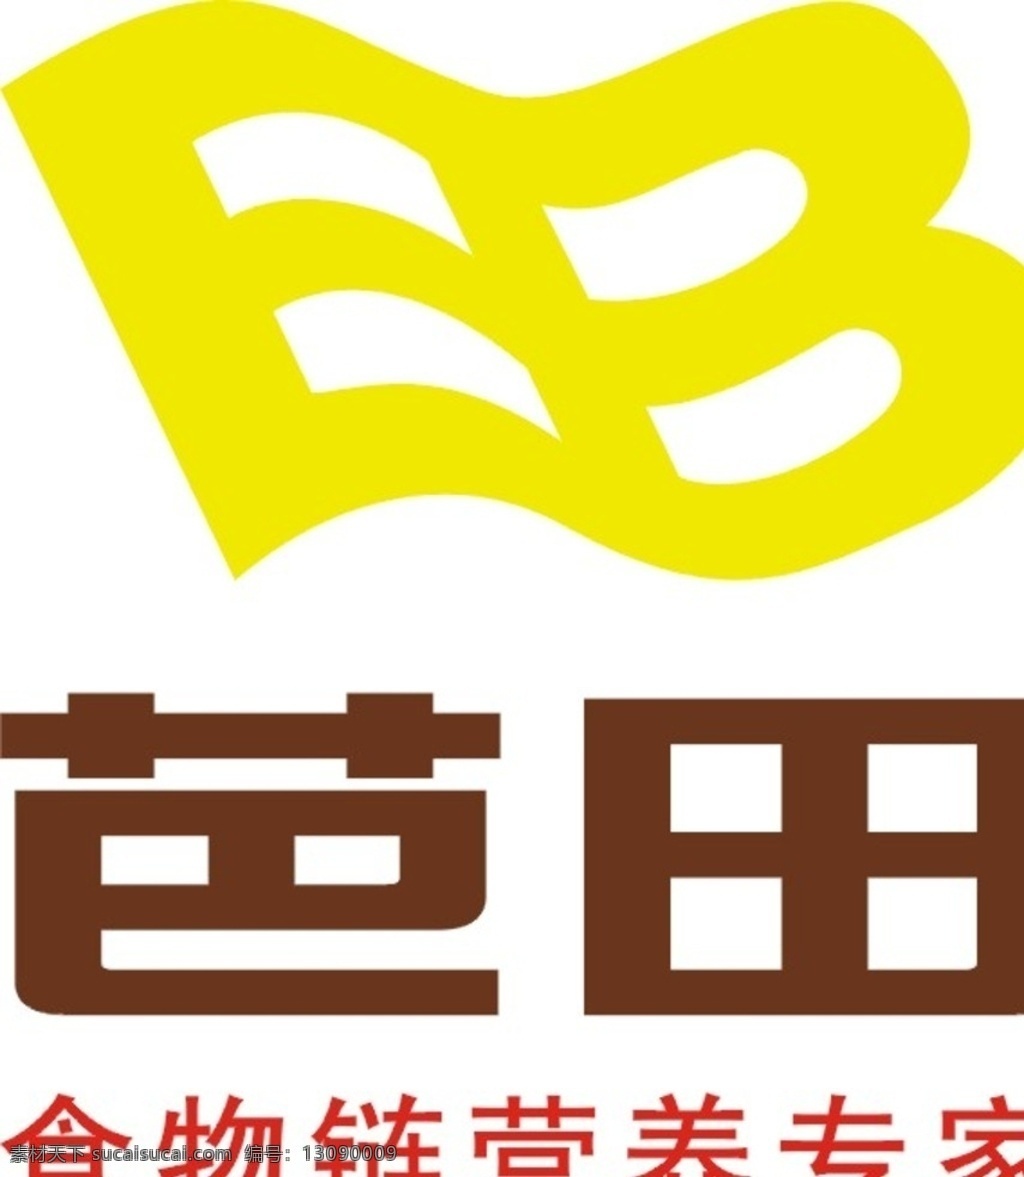 芭 田 新版 logo 芭田 芭田化肥 芭田标志 芭田vi logo设计